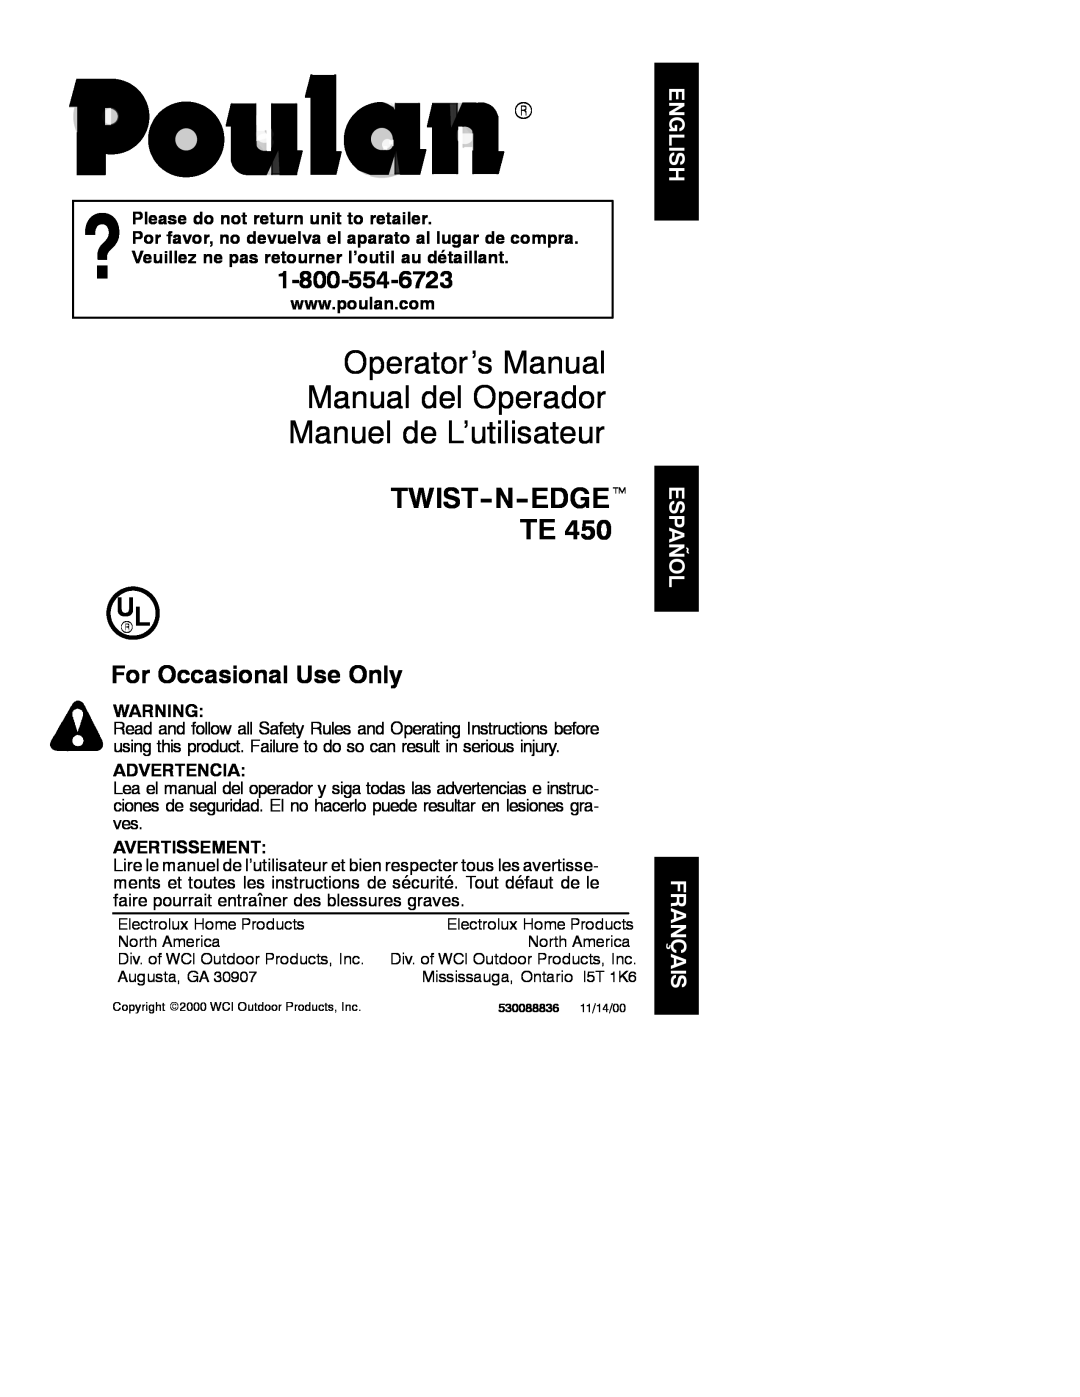 Poulan 530088836 operating instructions Operator’s Manual Manual del Operador, Manuel de L’utilisateur, TWIST-N-EDGEt TE 